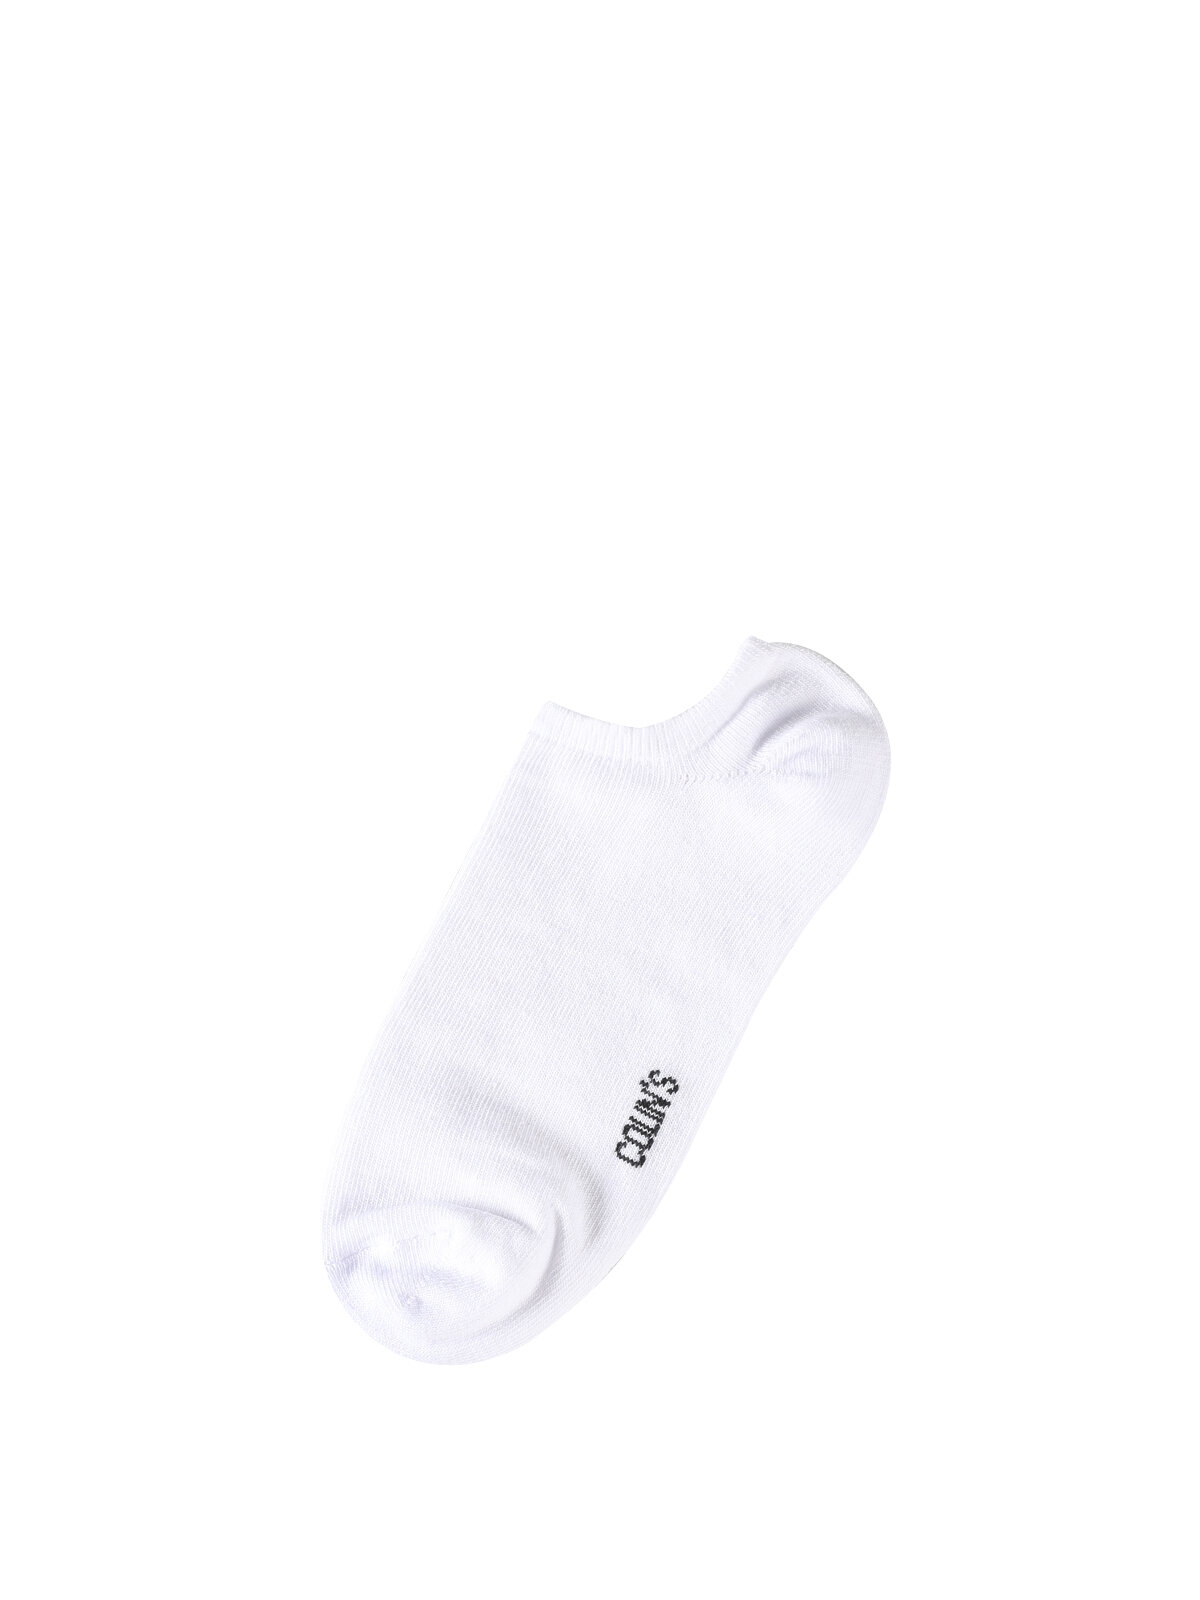 Показати інформацію про Шкарпетки Жіночі Білі Claacwsck0251810